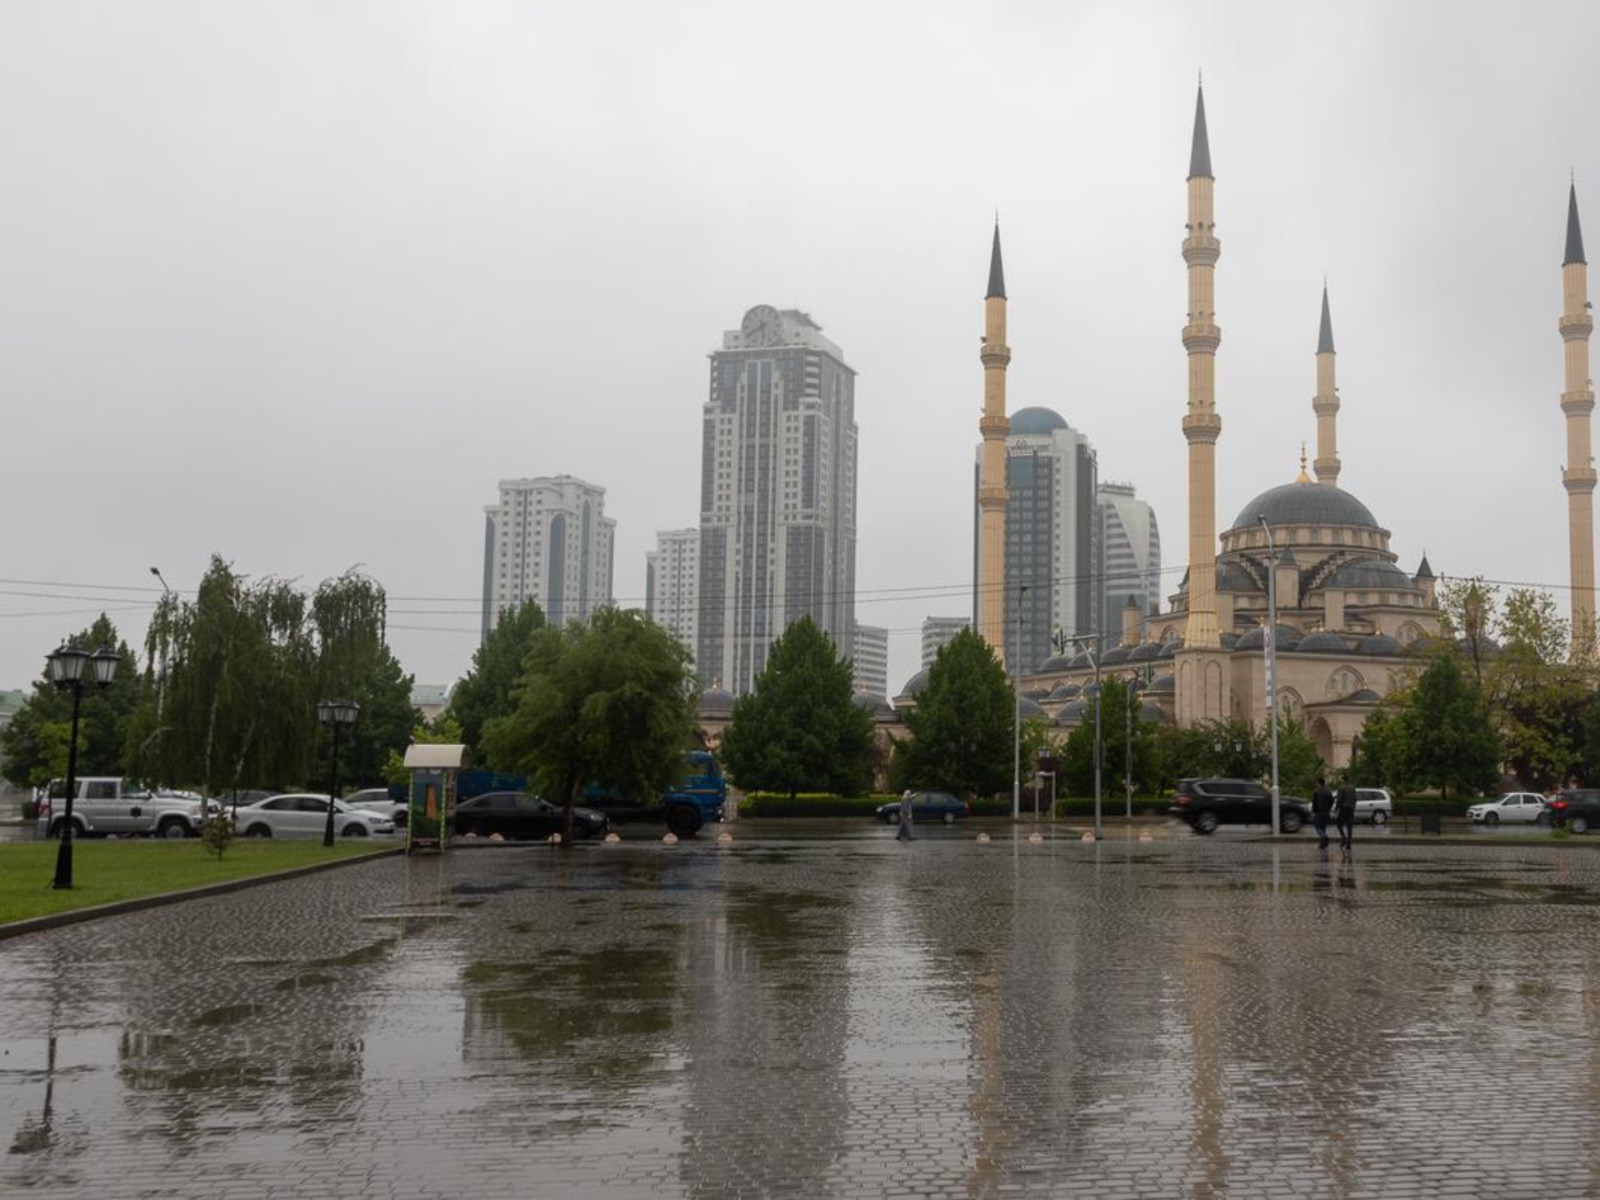 Мечеть города Грозного прекрасна при любой погоде guidego.ru